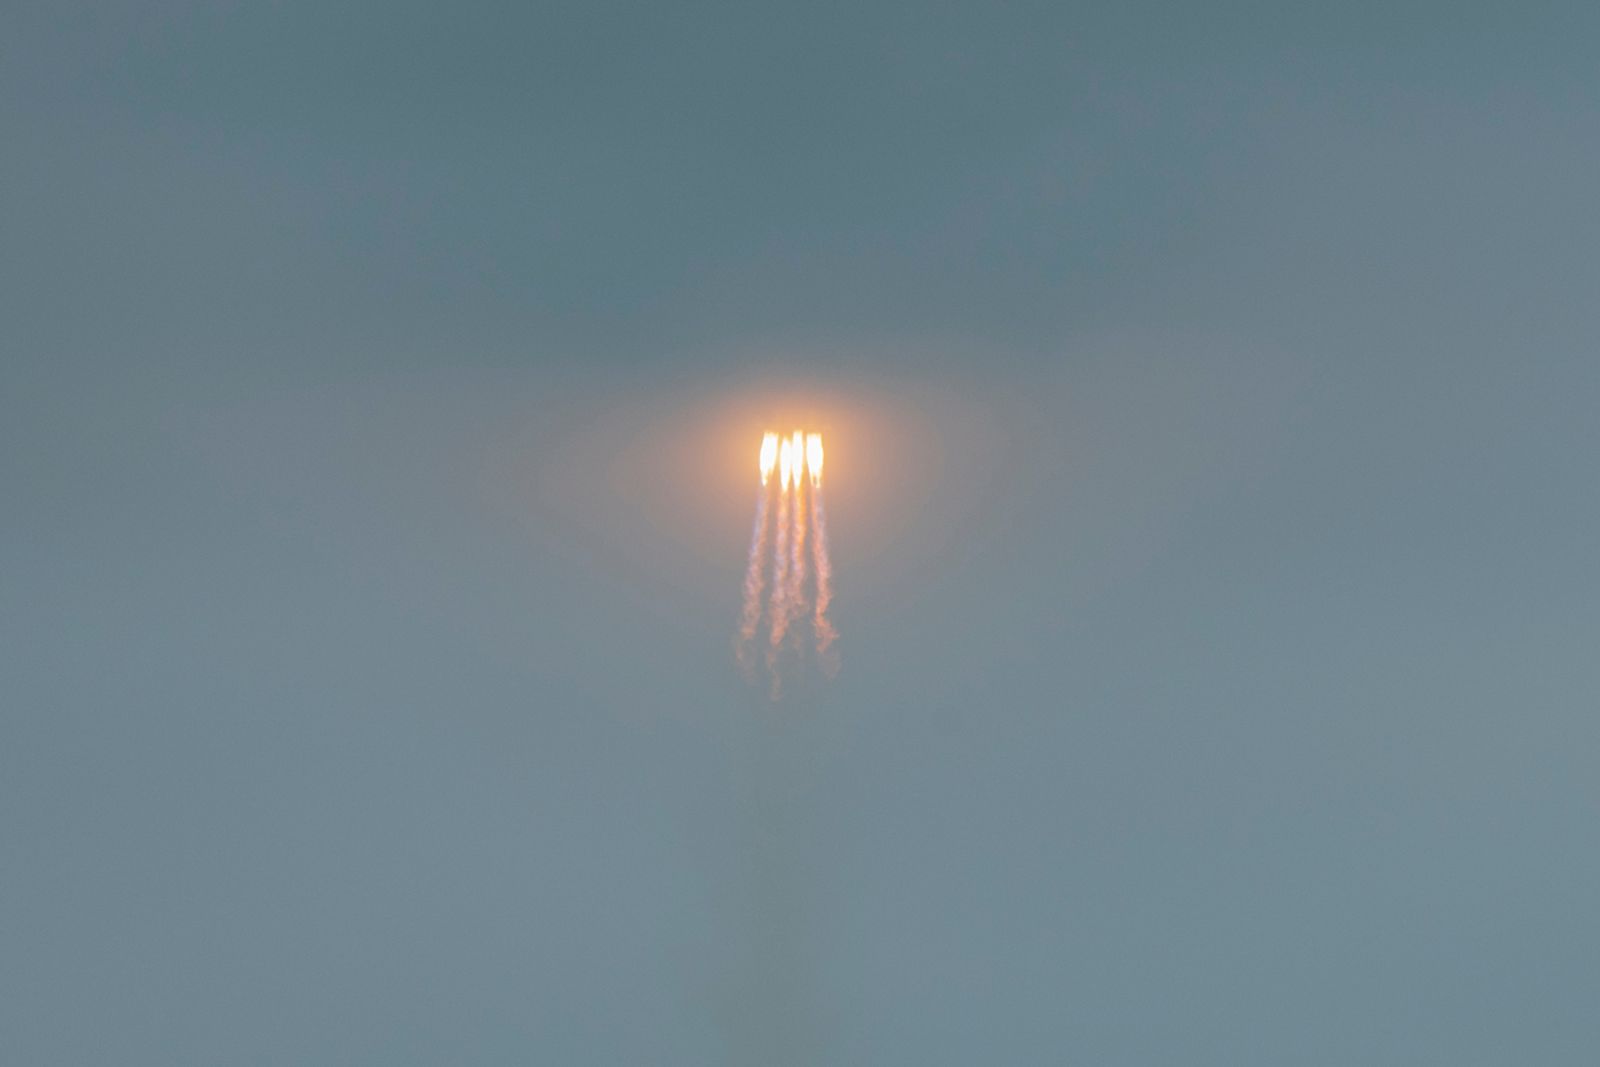 © Matjaz Tancic - Rocket launch in Hainan island, China.